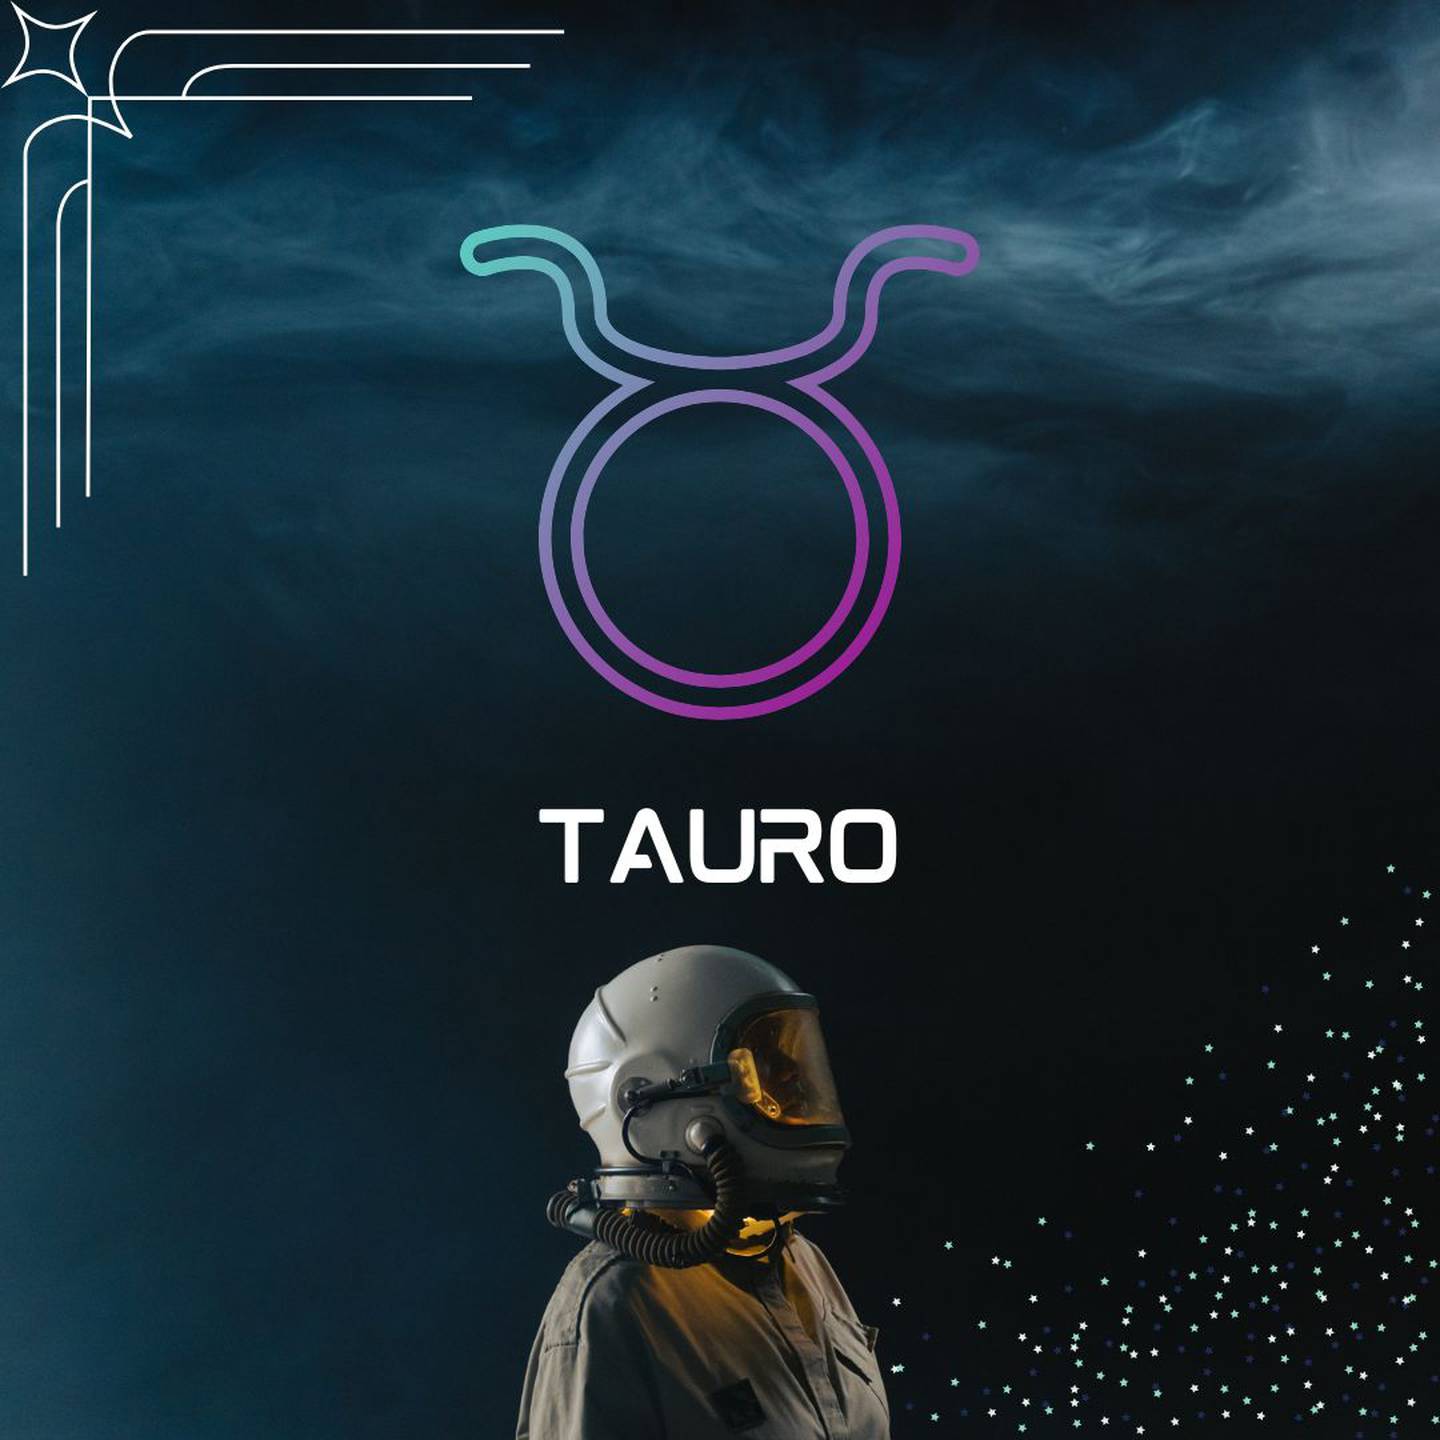 Sobre un fondo oscuro, con humo en la parte superior, aparece el símbolo de Tauro. Al centro aparece el nombre del signo en color blanco y todavía más abajo, un astronauta está mirando hacia la derecha.